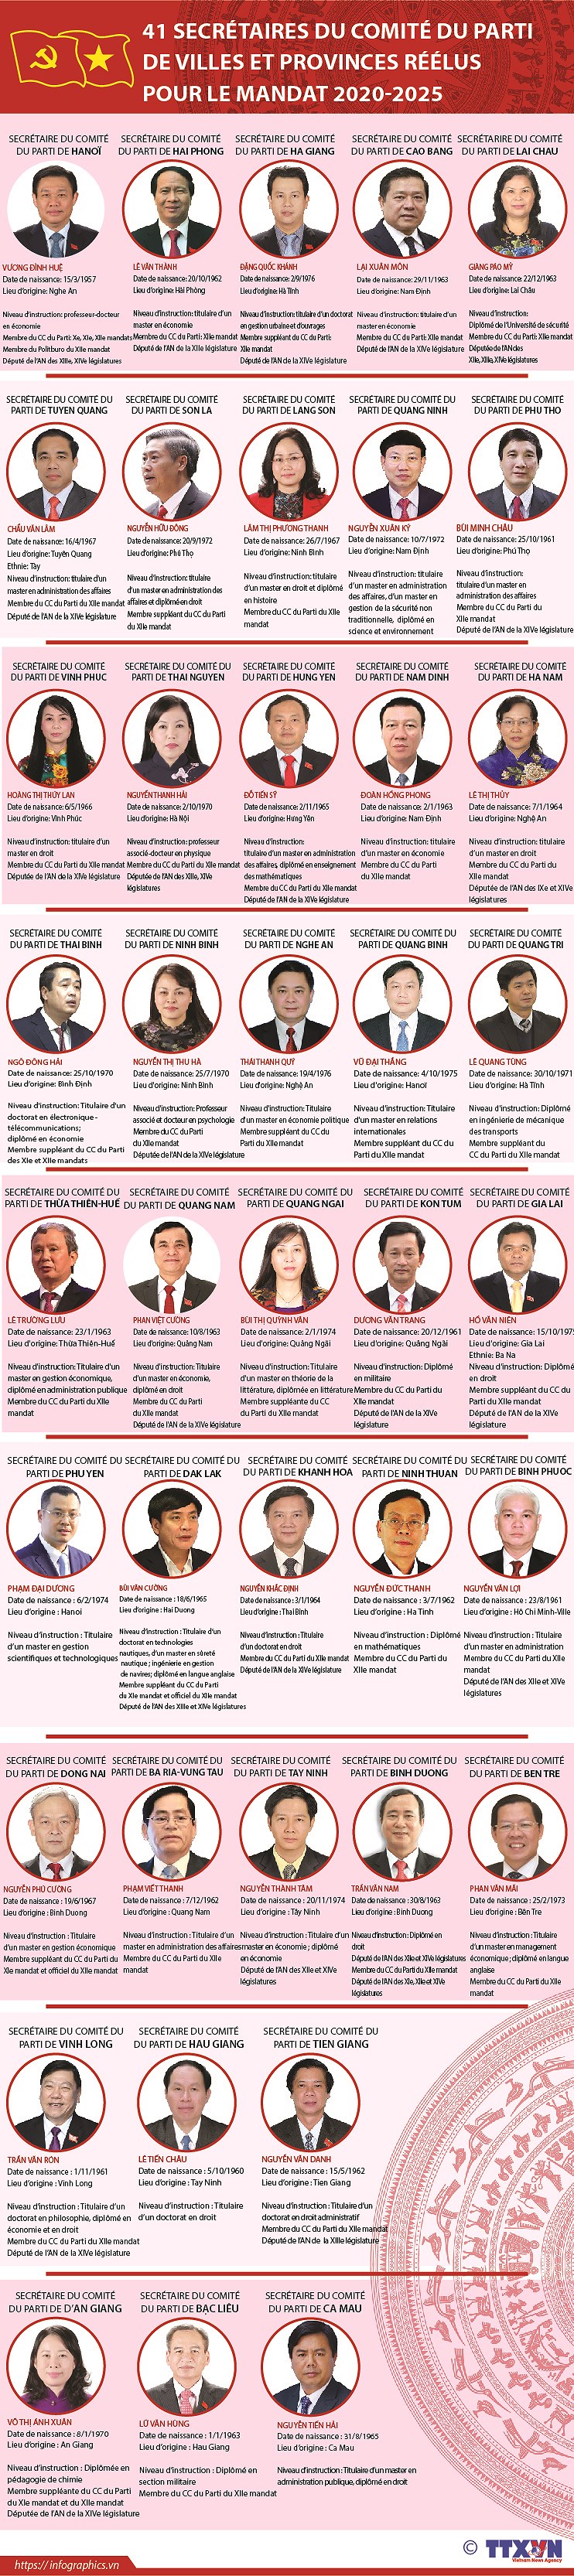 41 secretaires du Comite du Parti de villes et provinces reelus pour le mandat 2020-2025 hinh anh 1